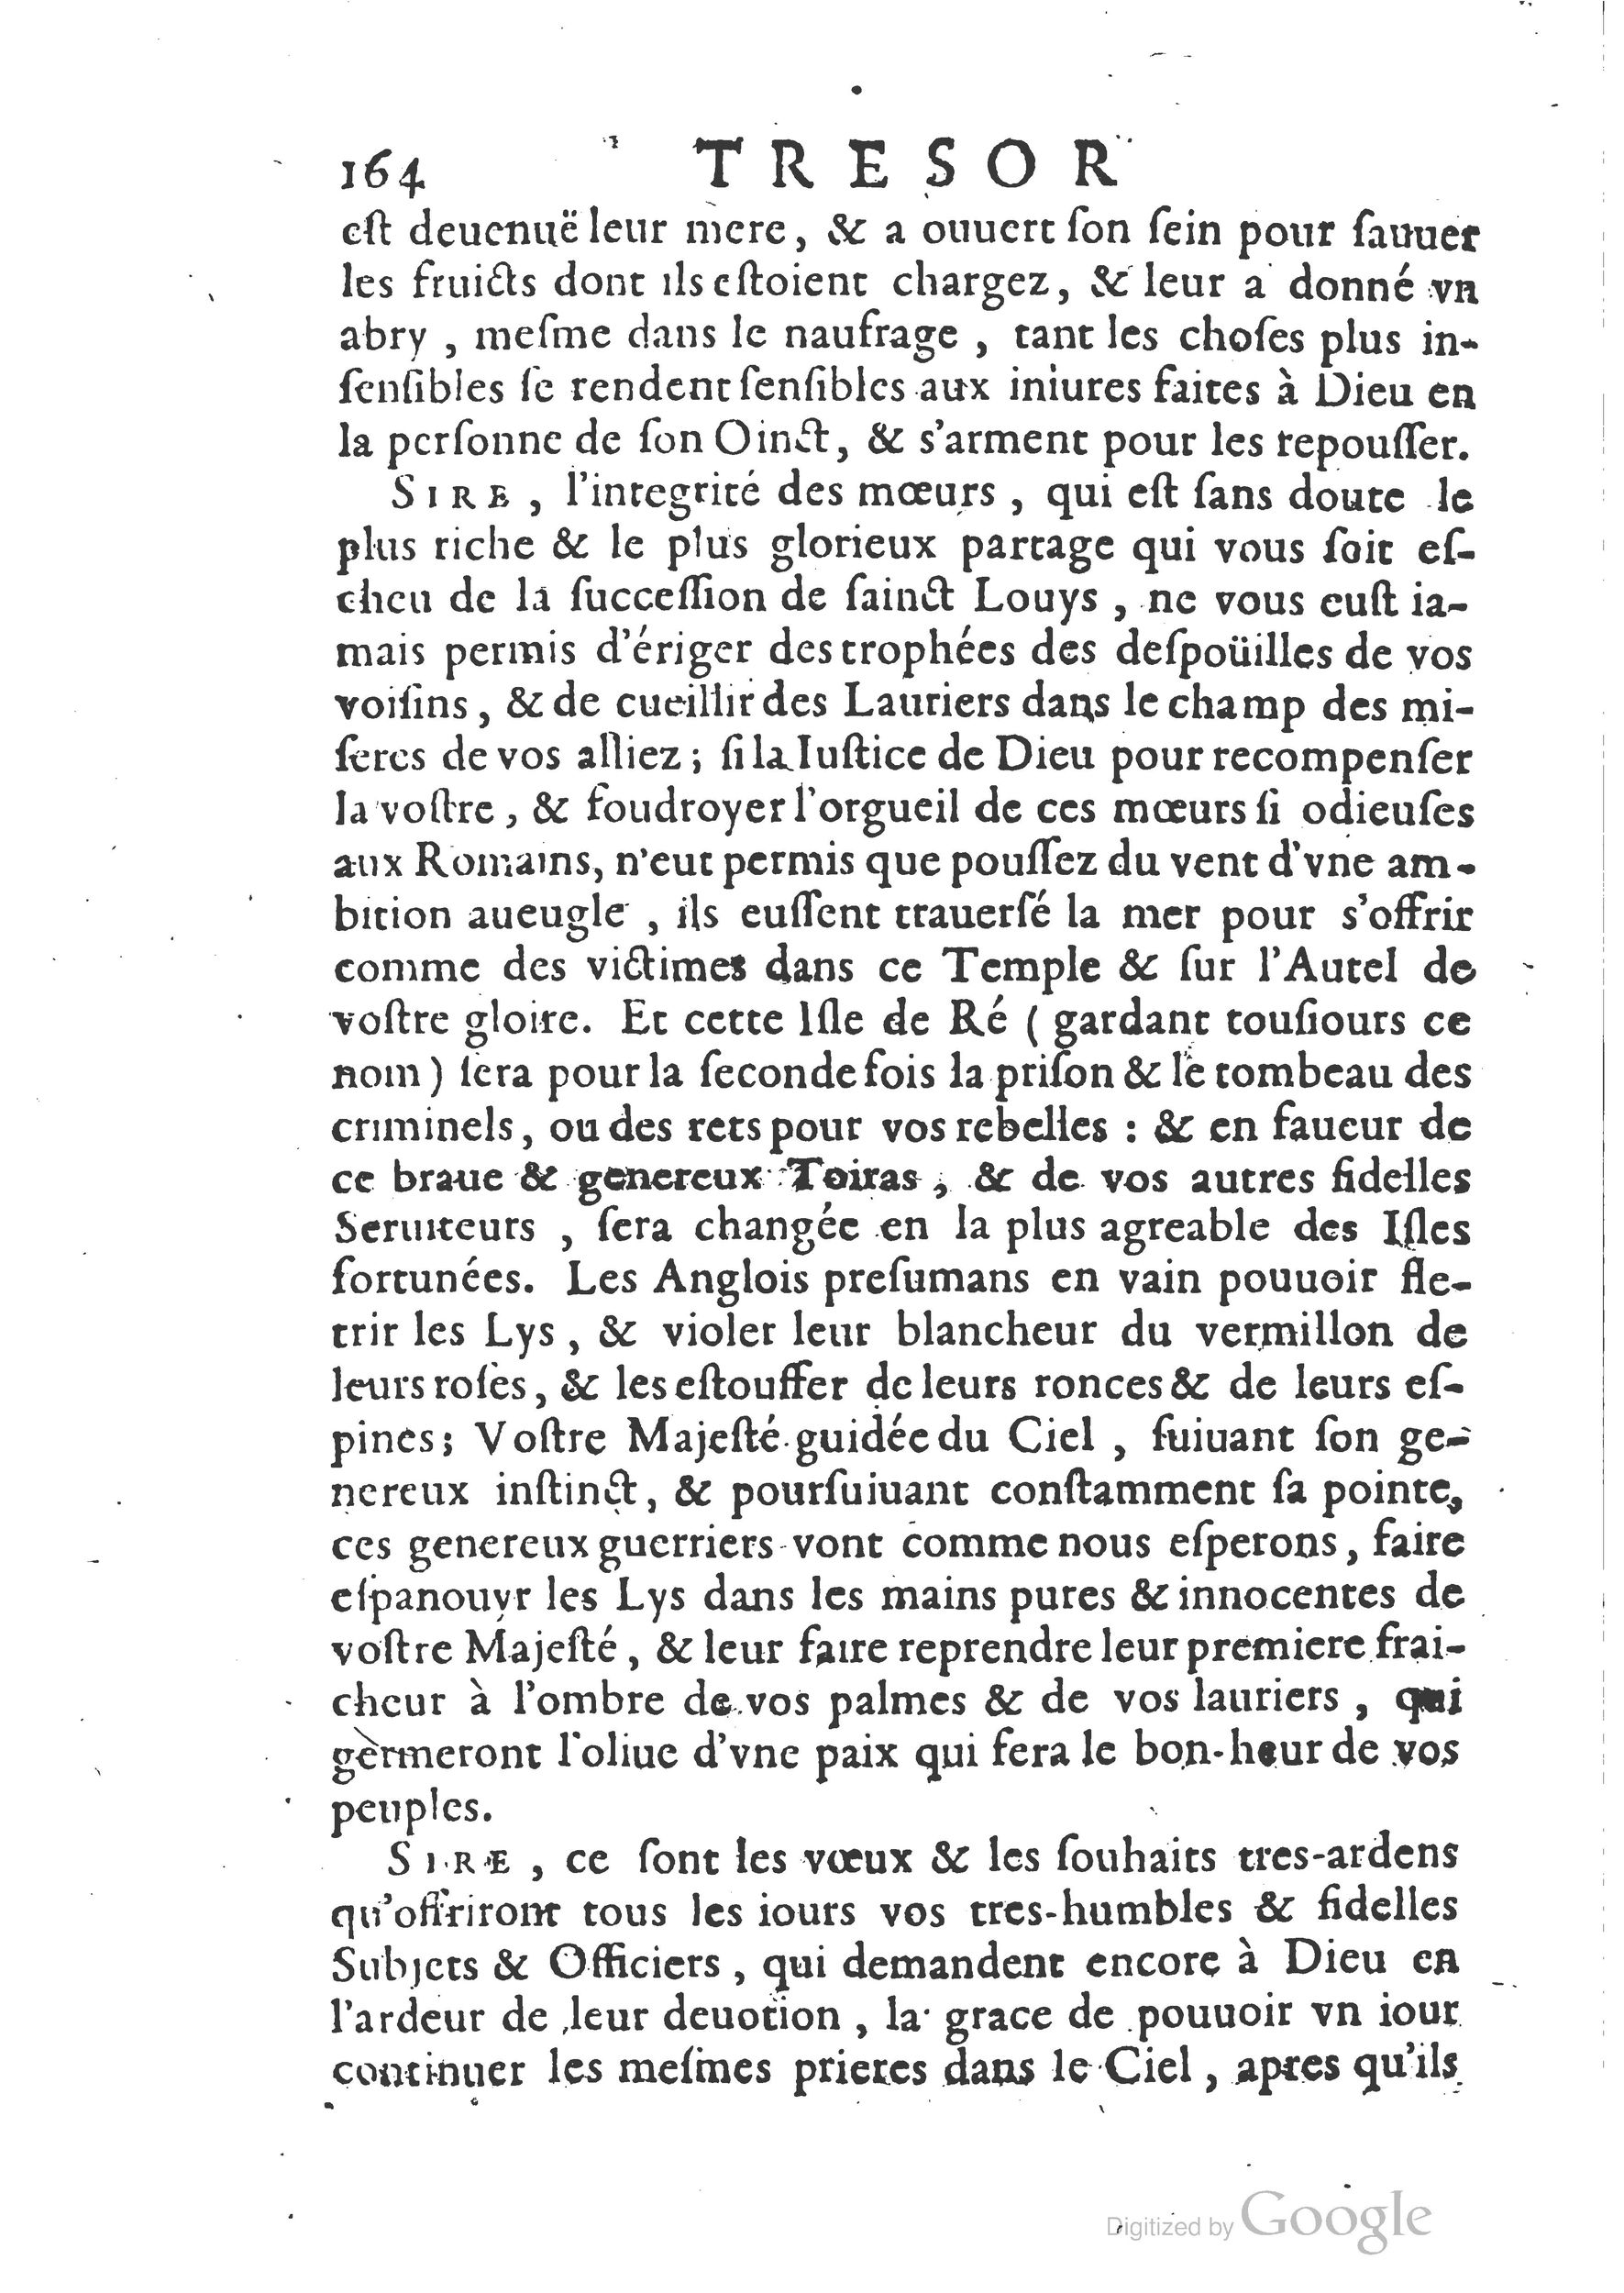 1654 Trésor des harangues, remontrances et oraisons funèbres Robin_BM Lyon_Page_183.jpg